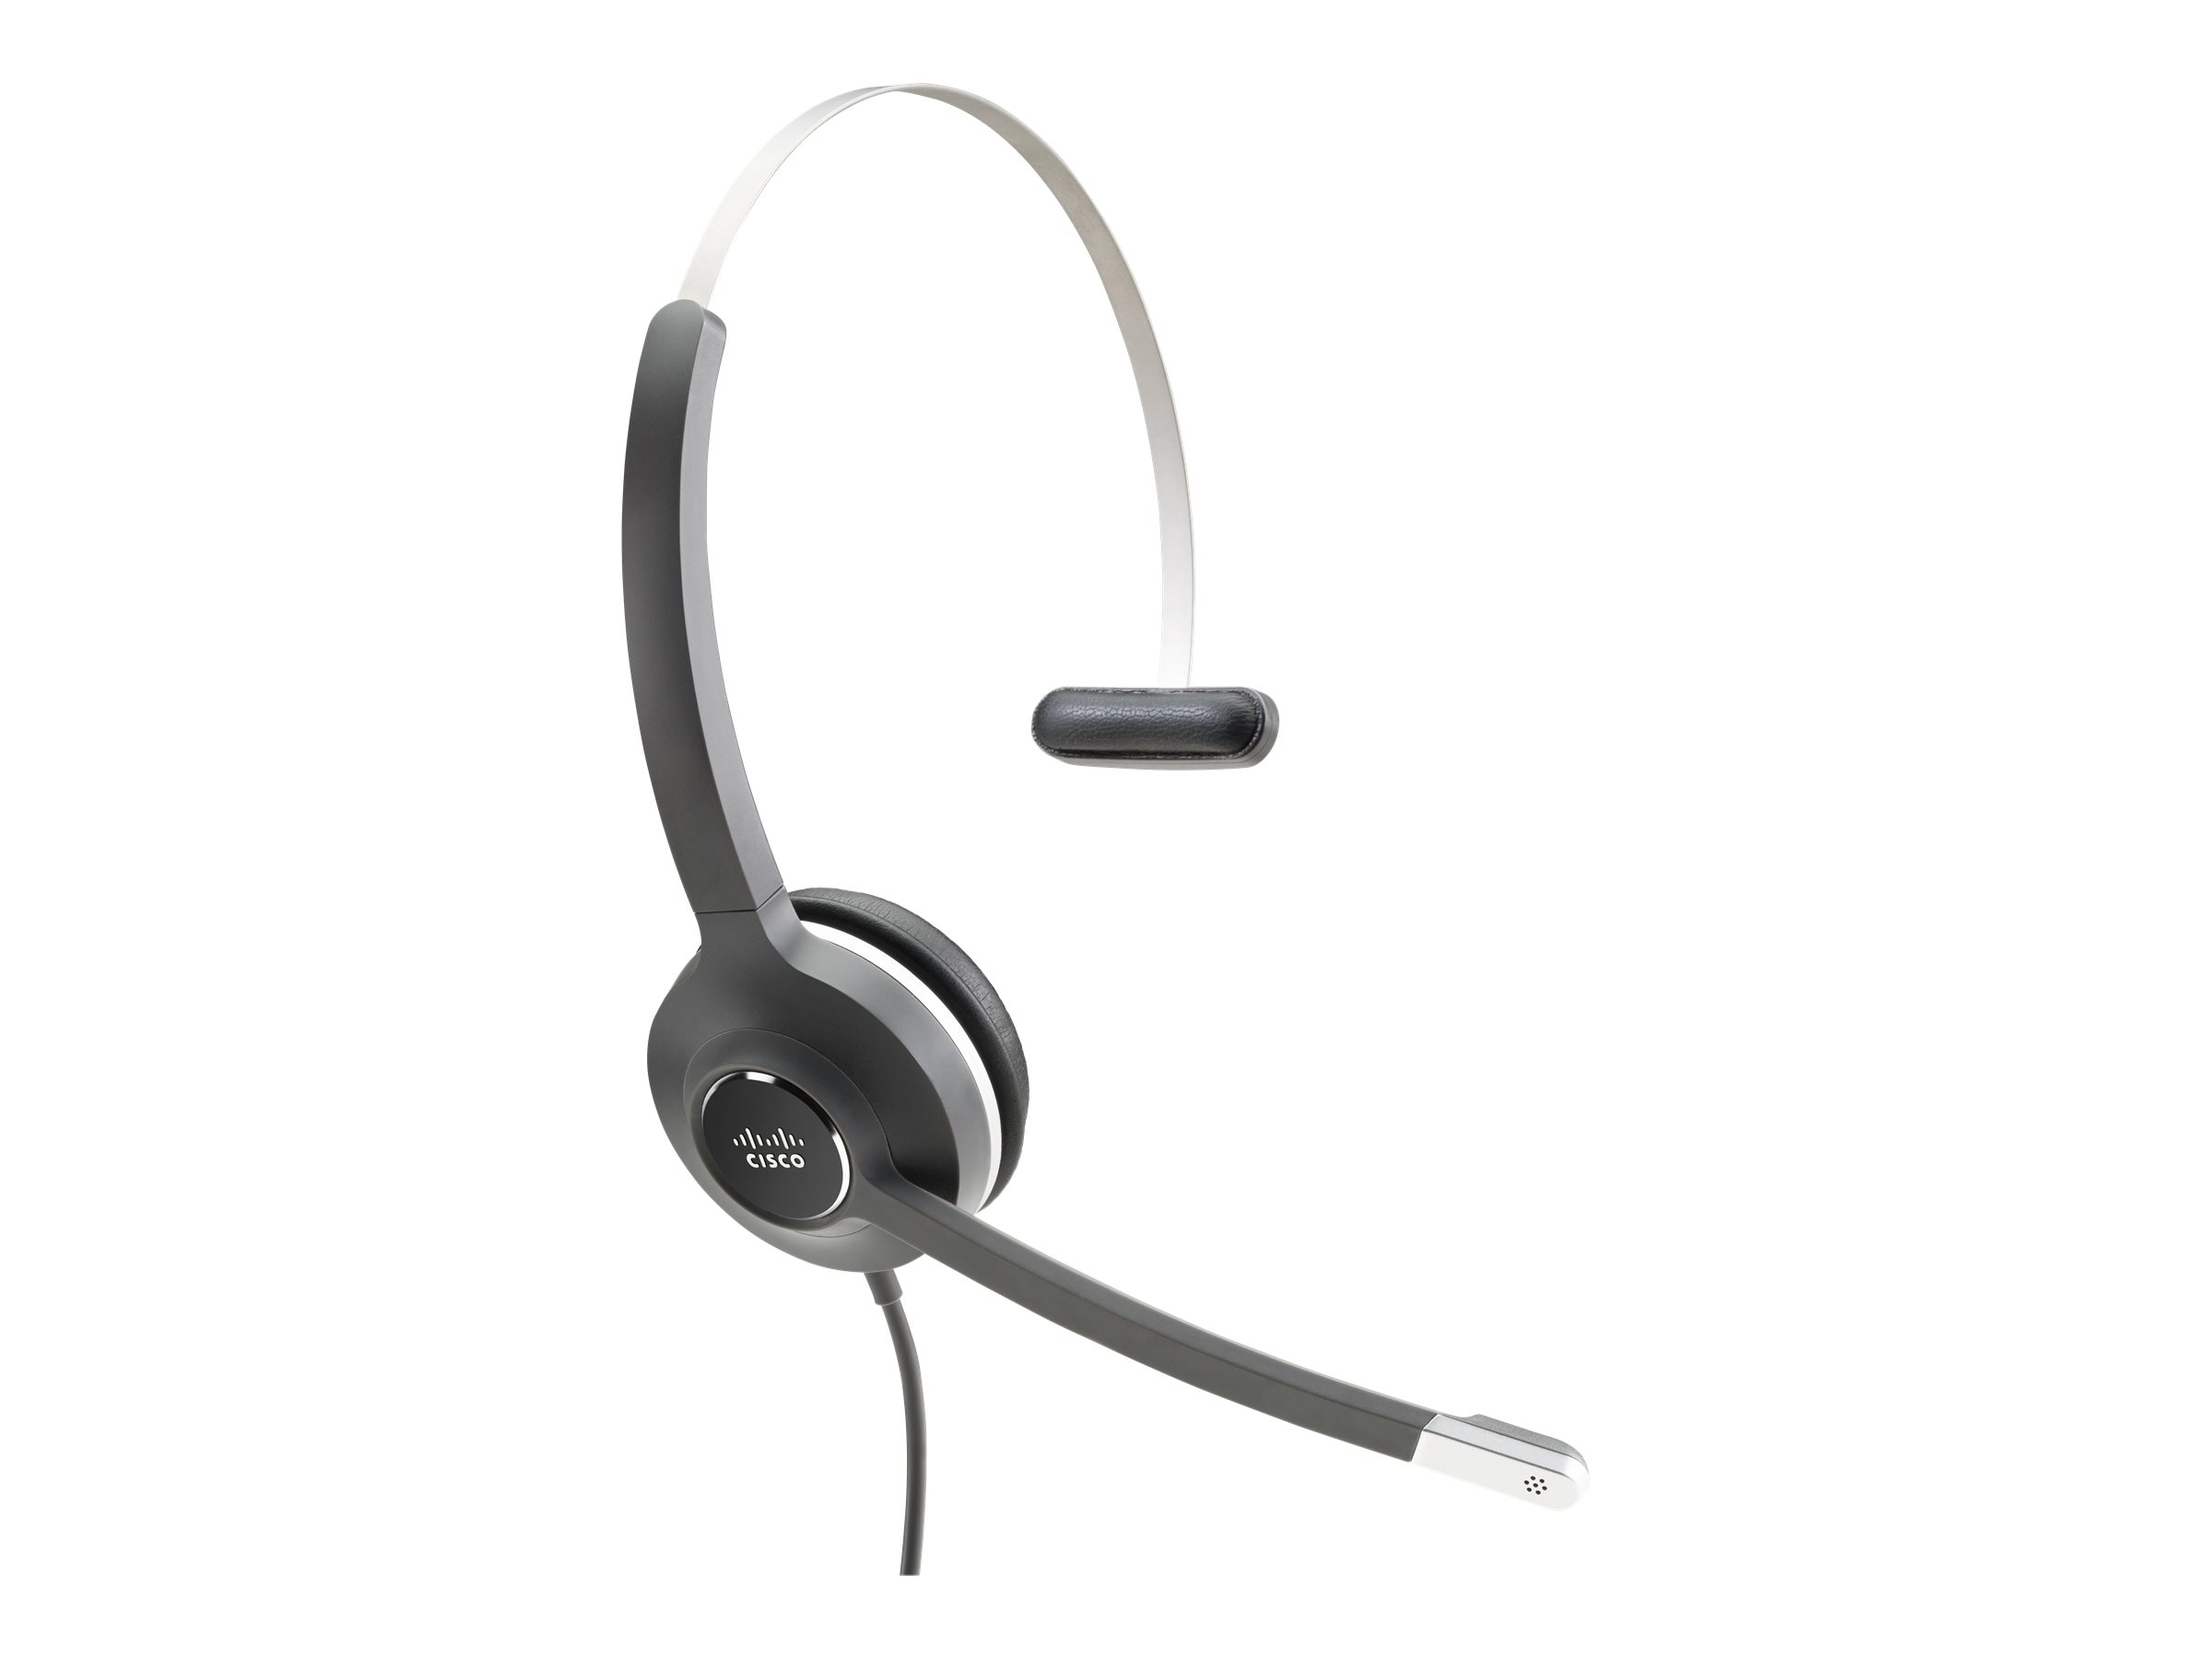 Cisco 531 Wired Single - Headset - On-Ear - kabelgebunden - für Cisco DX70, DX70 - MSRP, DX80, DX80 (No Radio)